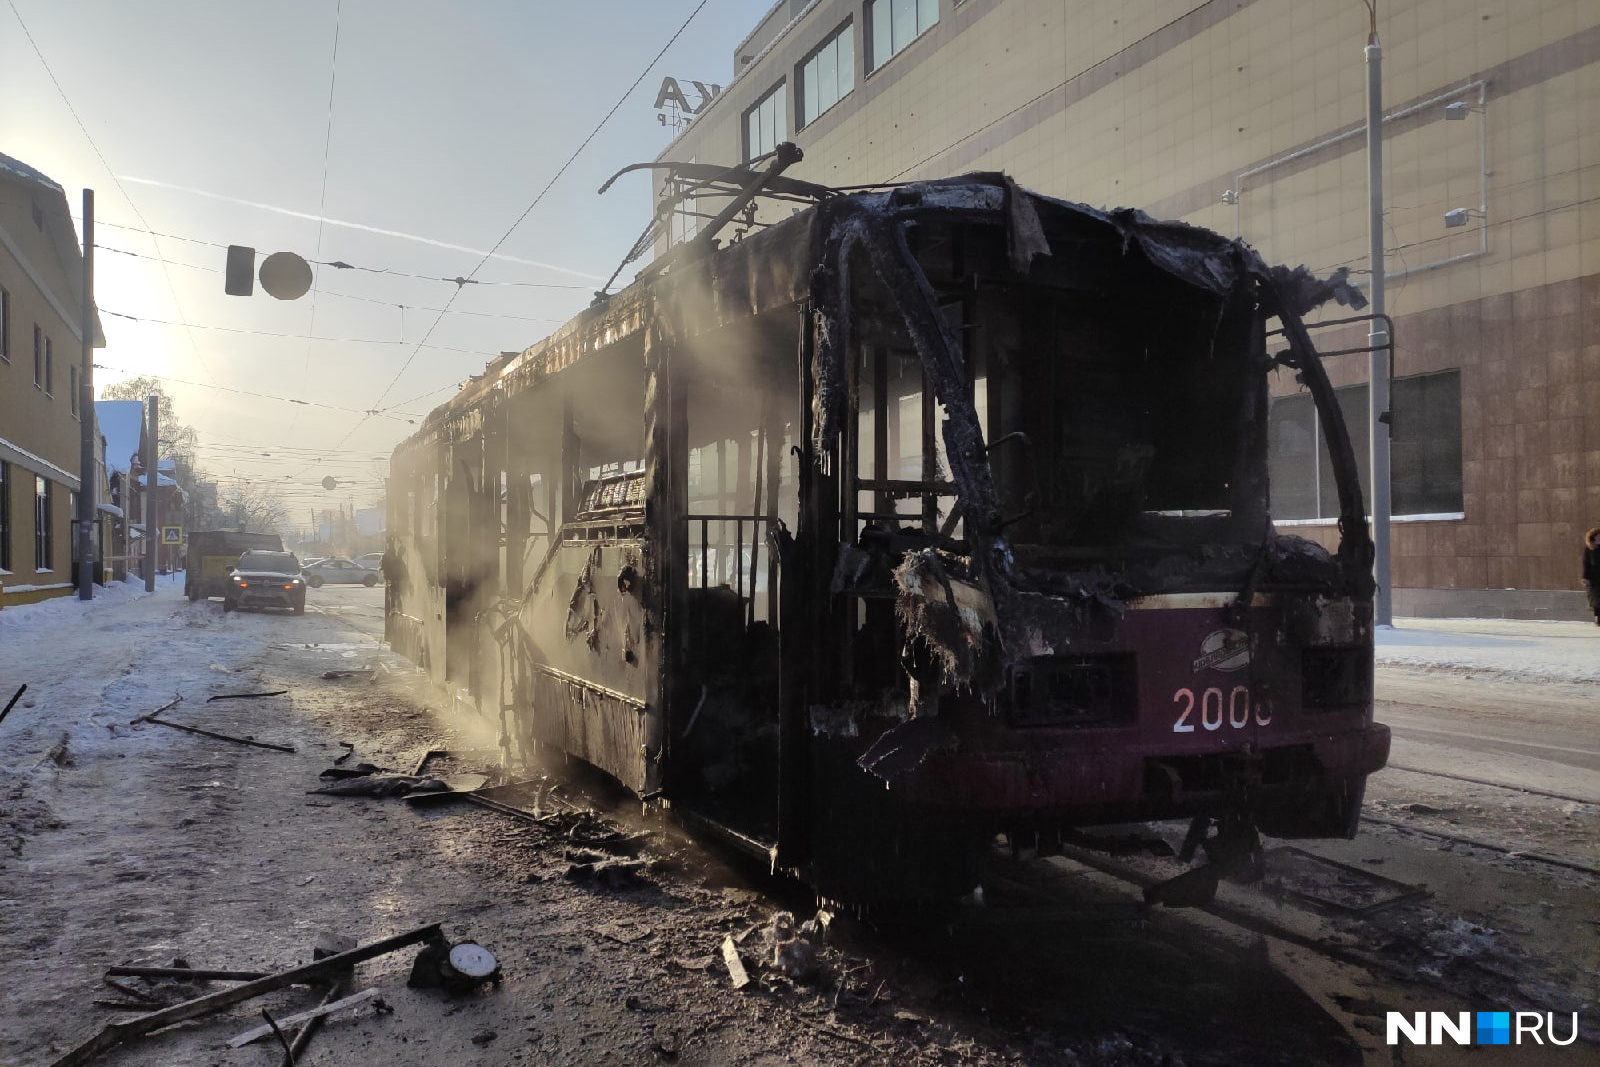 23 декабря 2015. Сгорел трамвай в Нижнем Новгороде 23 декабря. Пожар трамвая в Нижнем Новгороде. В Нижнем сгорел трамвай.